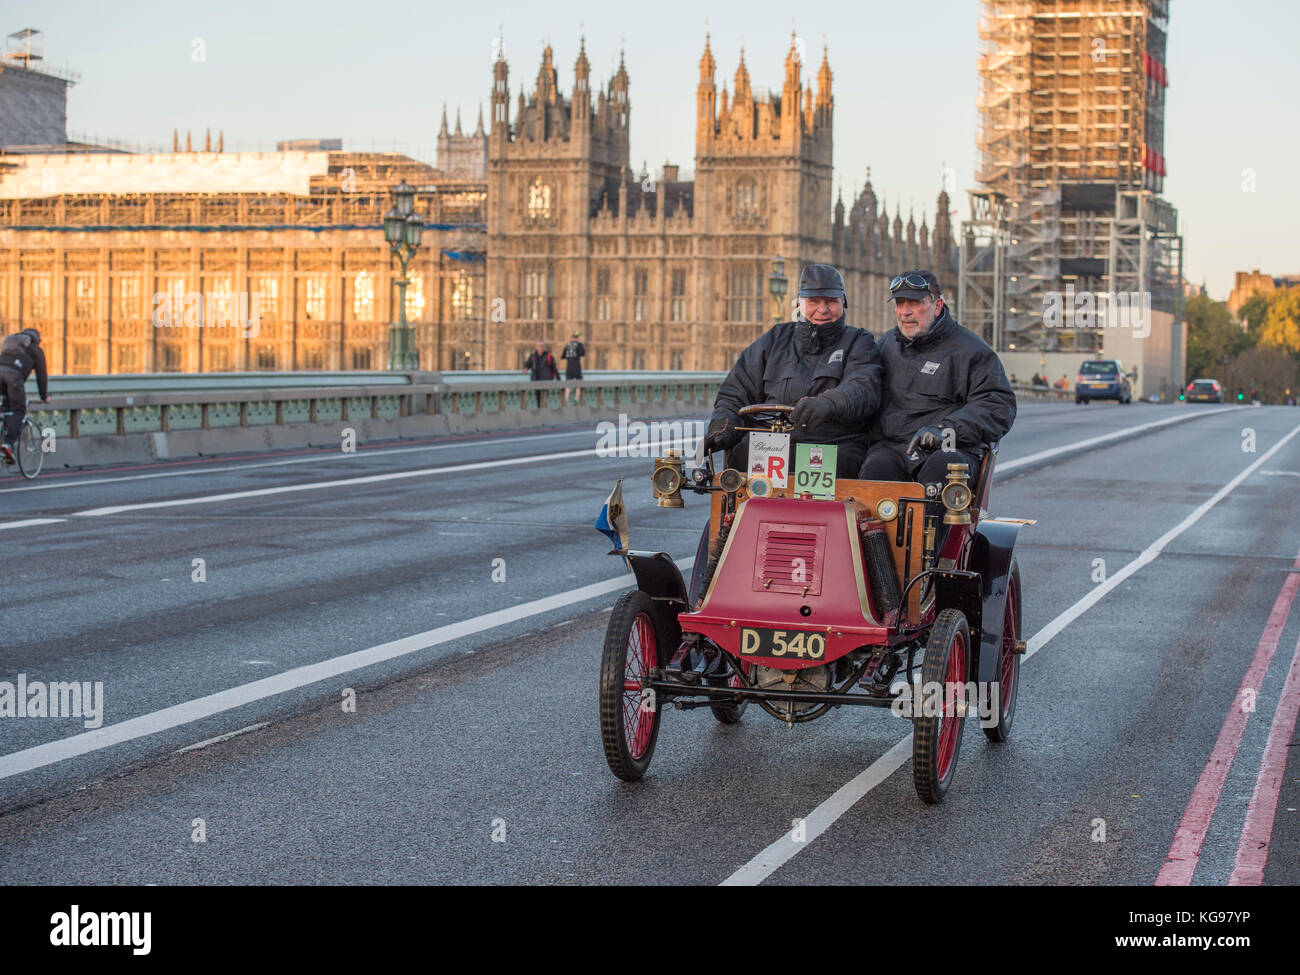 5 novembre 2017. Bonhams de Londres à Brighton, la course automobile vétéran, la plus longue course automobile au monde, 1901 Renault sur le pont de Westminster. Banque D'Images